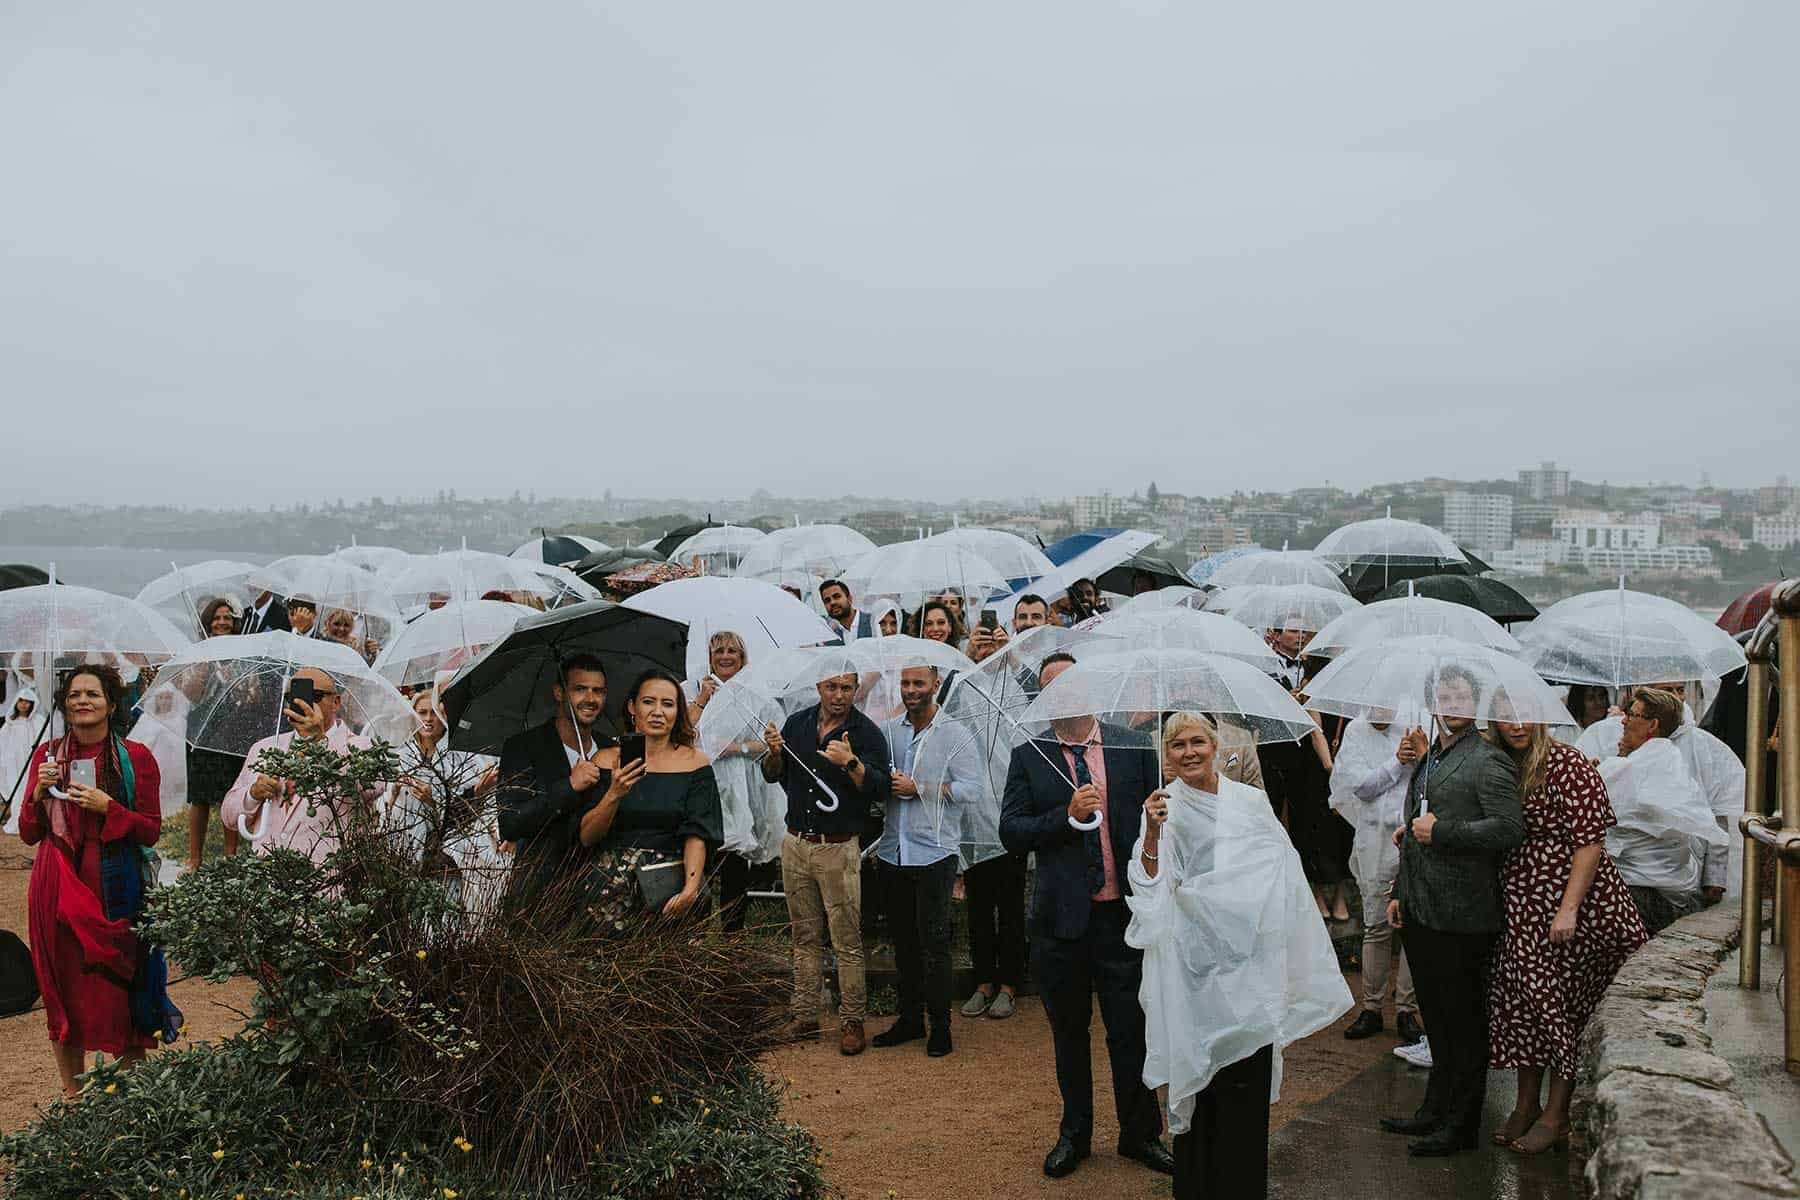 rainy North Bondi beach wedding in Sydney